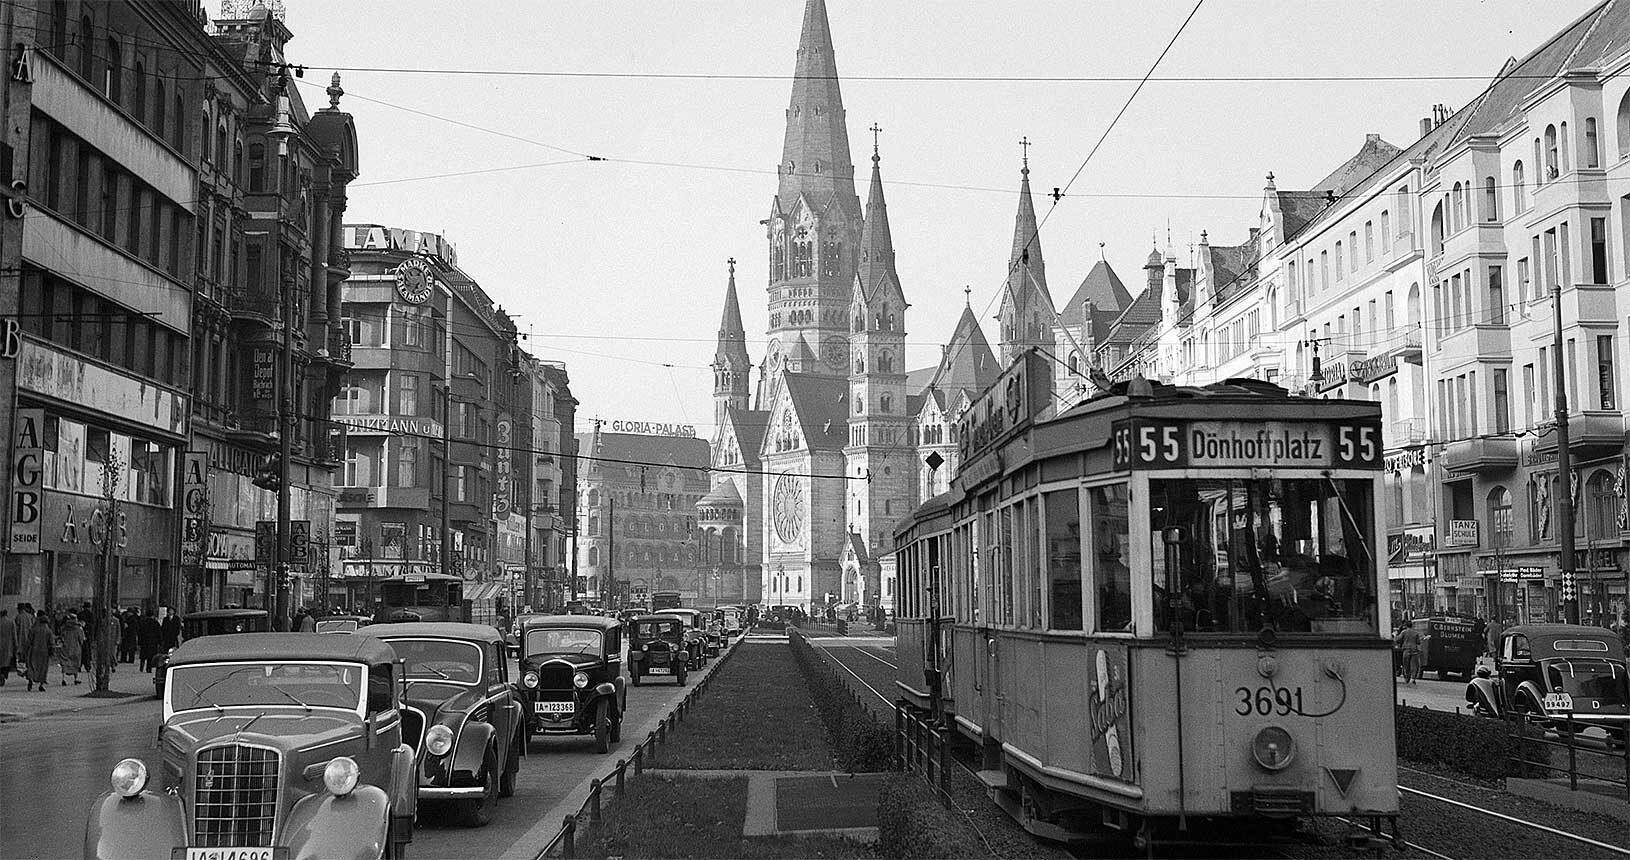 Tauentzienstraße (Berlin) im Jahr 1935 mit Autos und Straßenbahn, im Hintergrund die Kaiser-Wilhelm-Gedächtniskirche, Foto: Willem van de Poll (Public Domain)